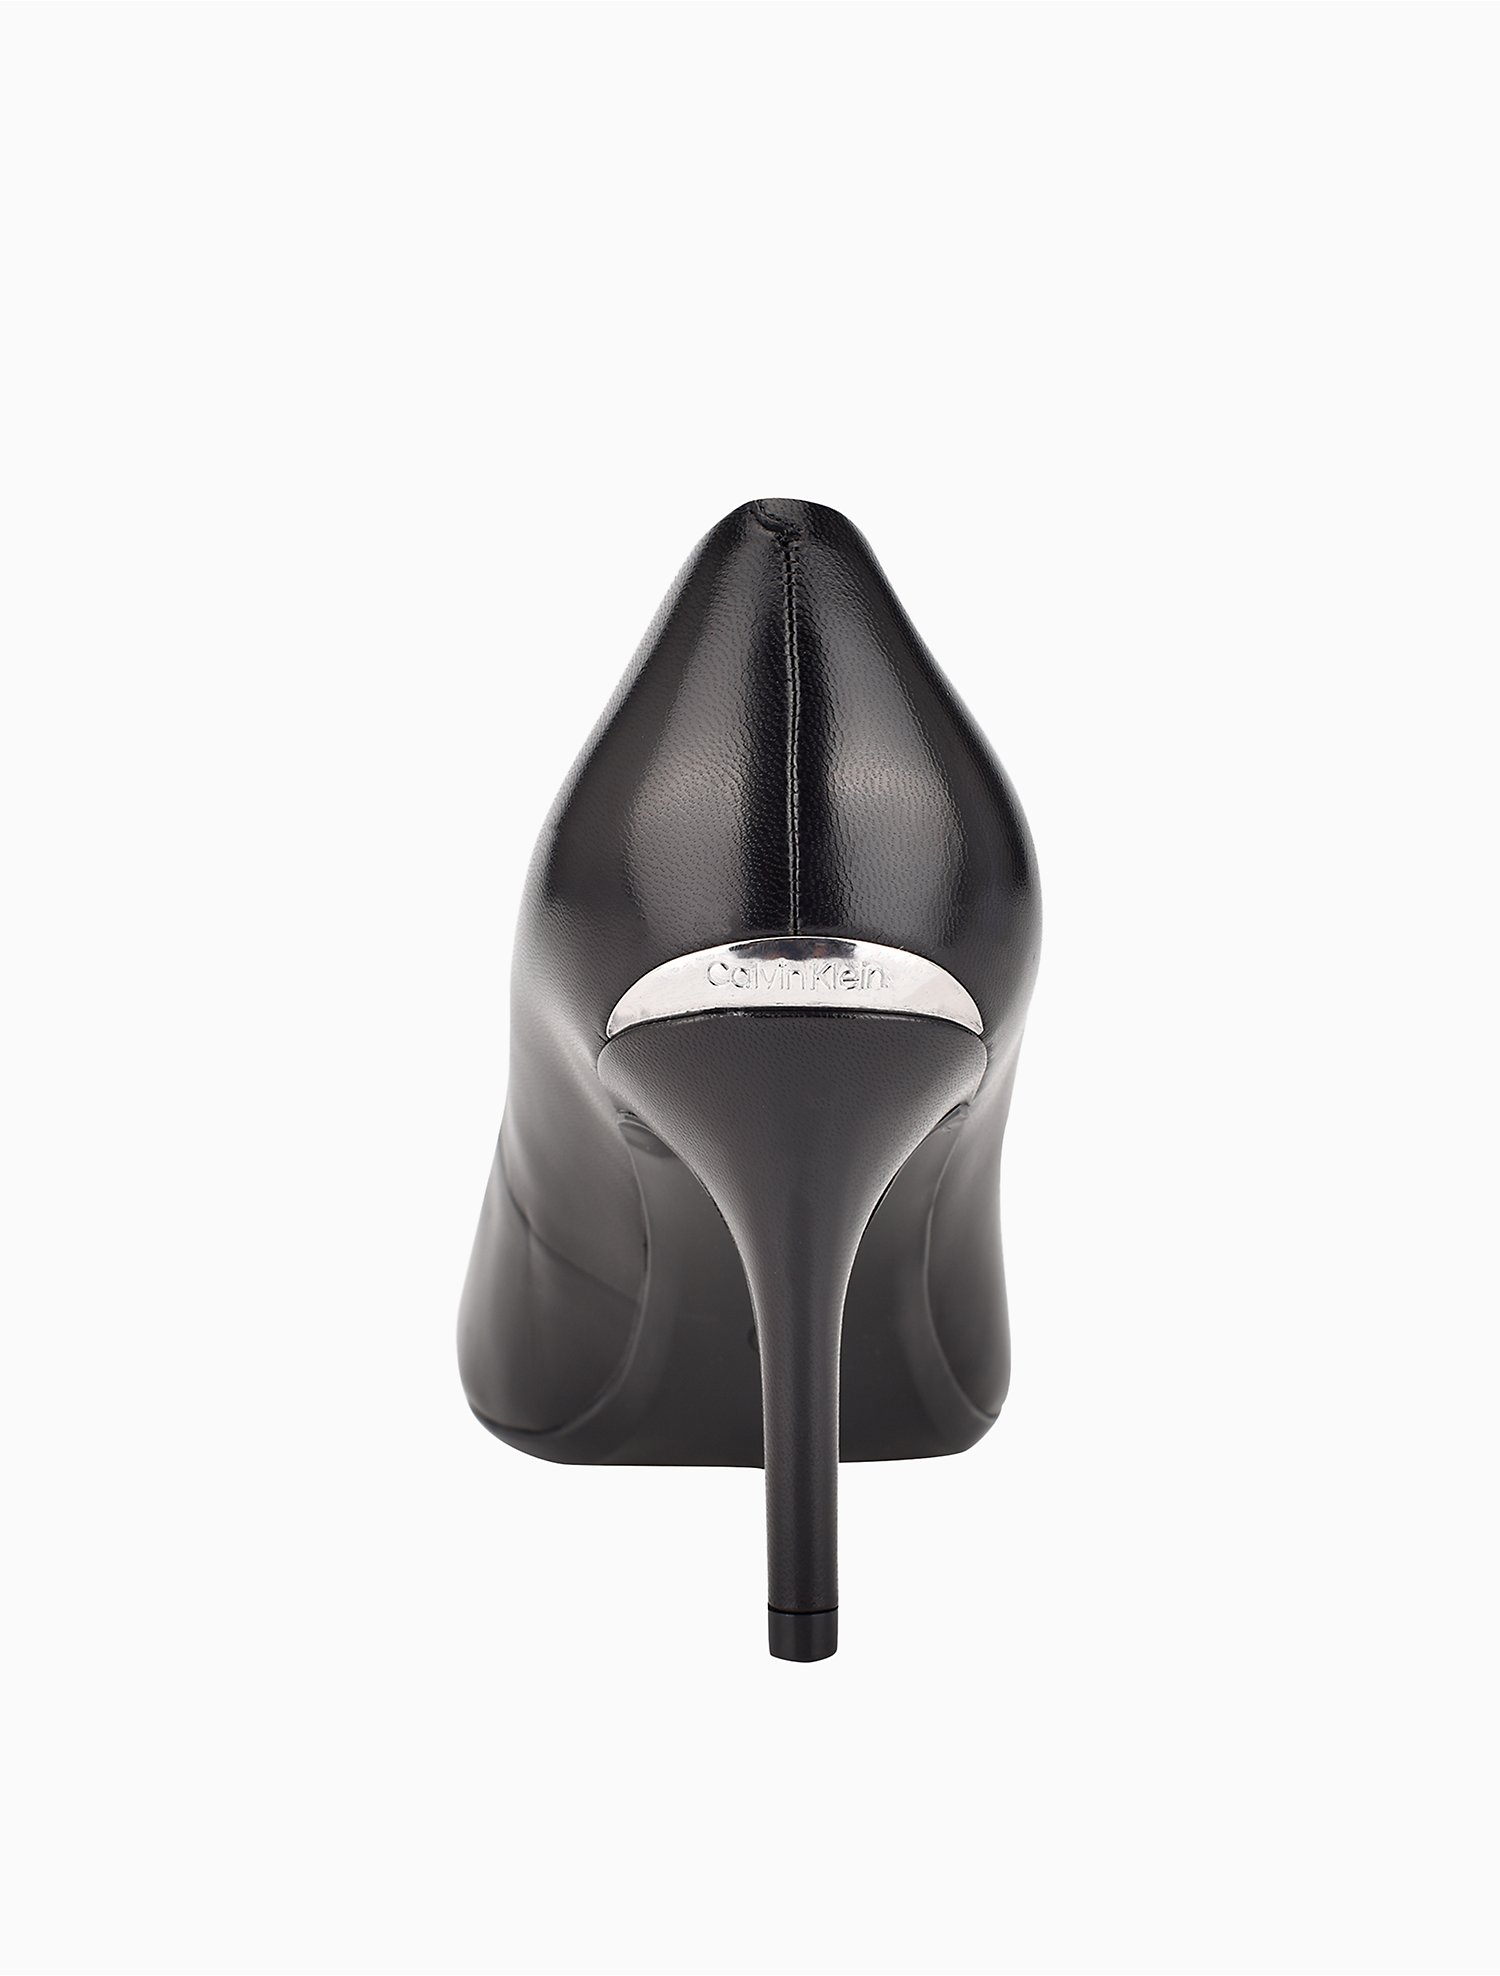 huren Bemiddelaar Transistor Gayle Dress Pump | Calvin Klein